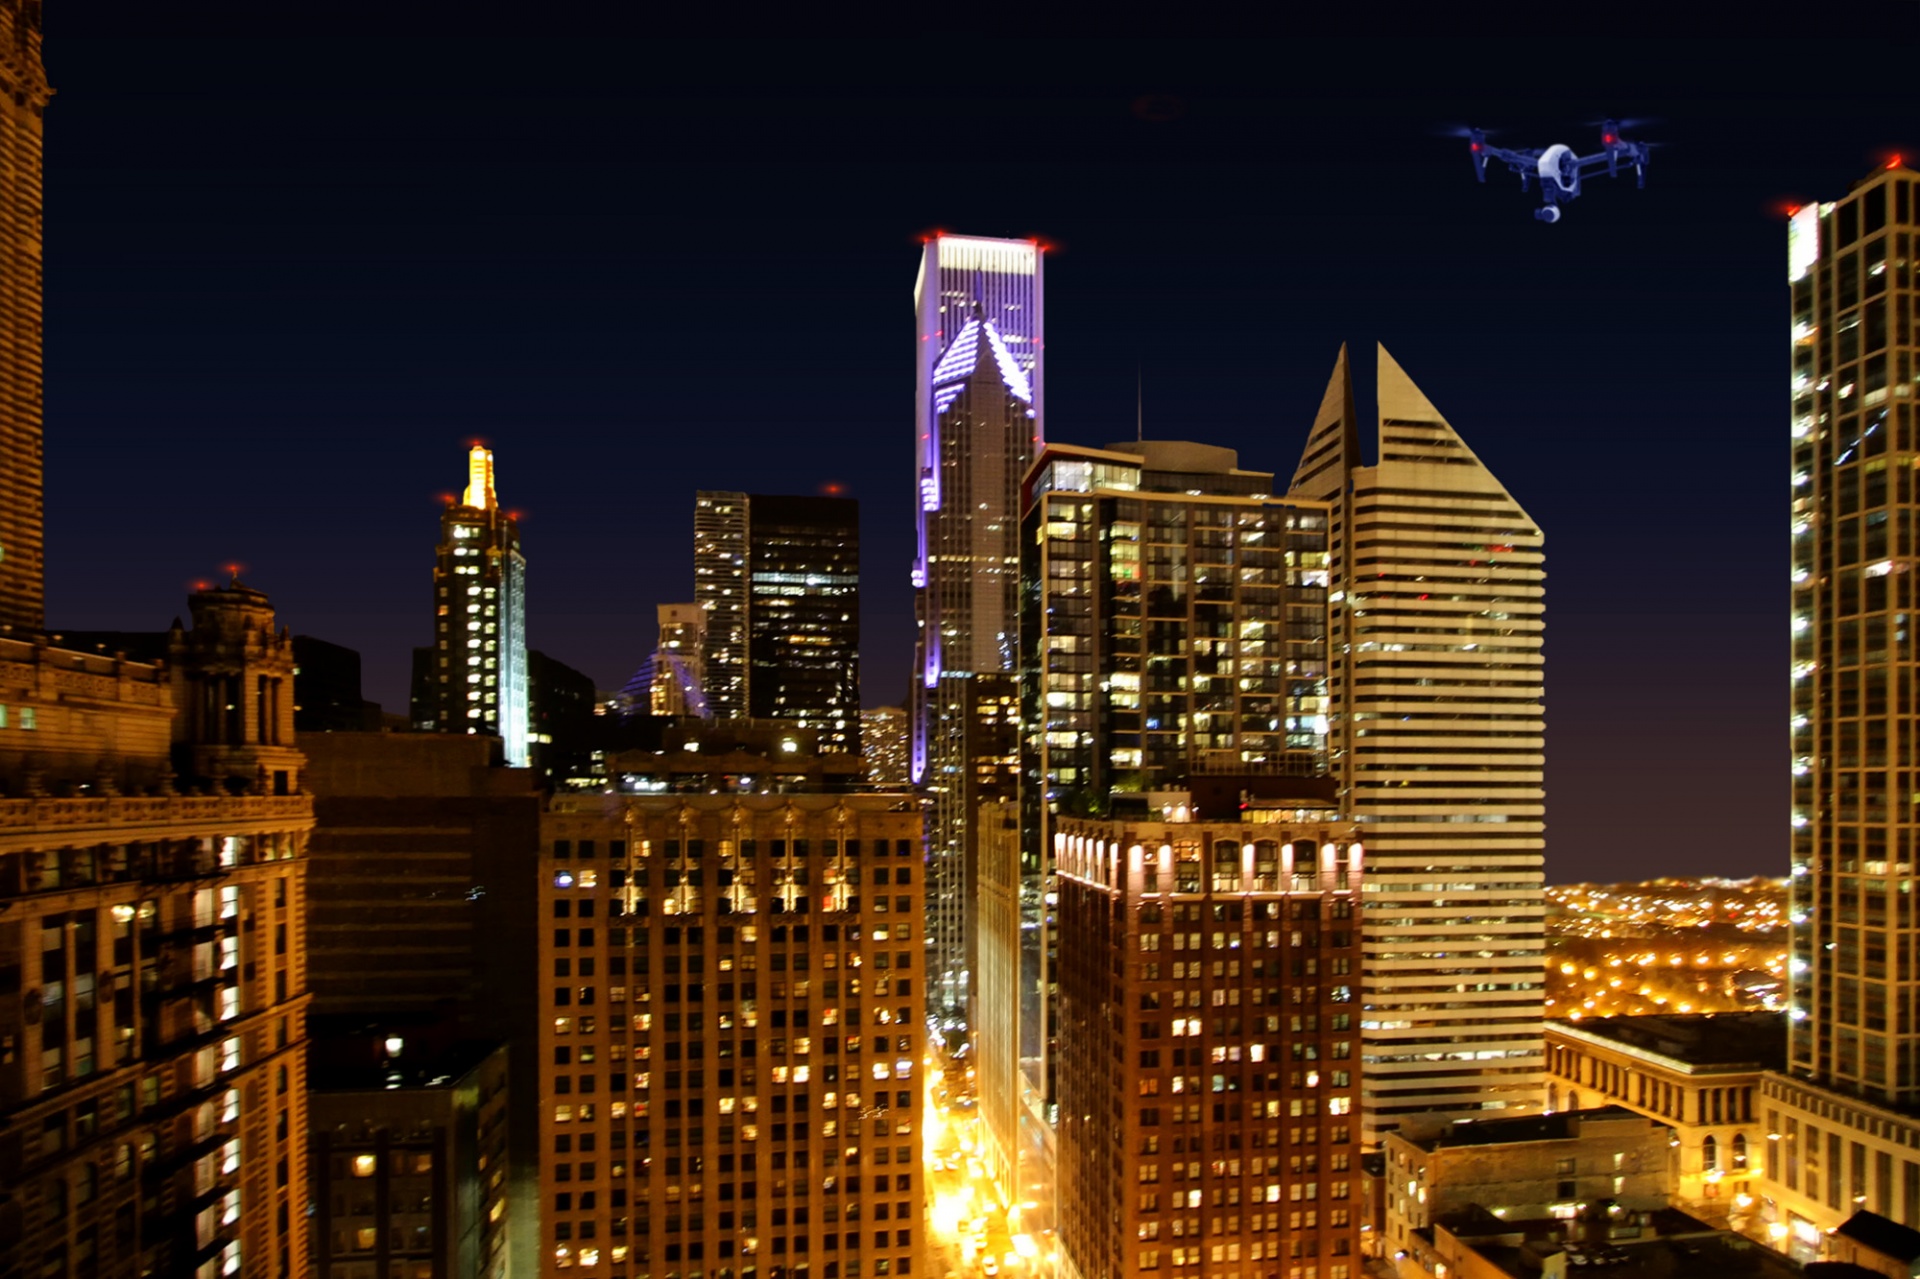 drone cityscape night scene free photo